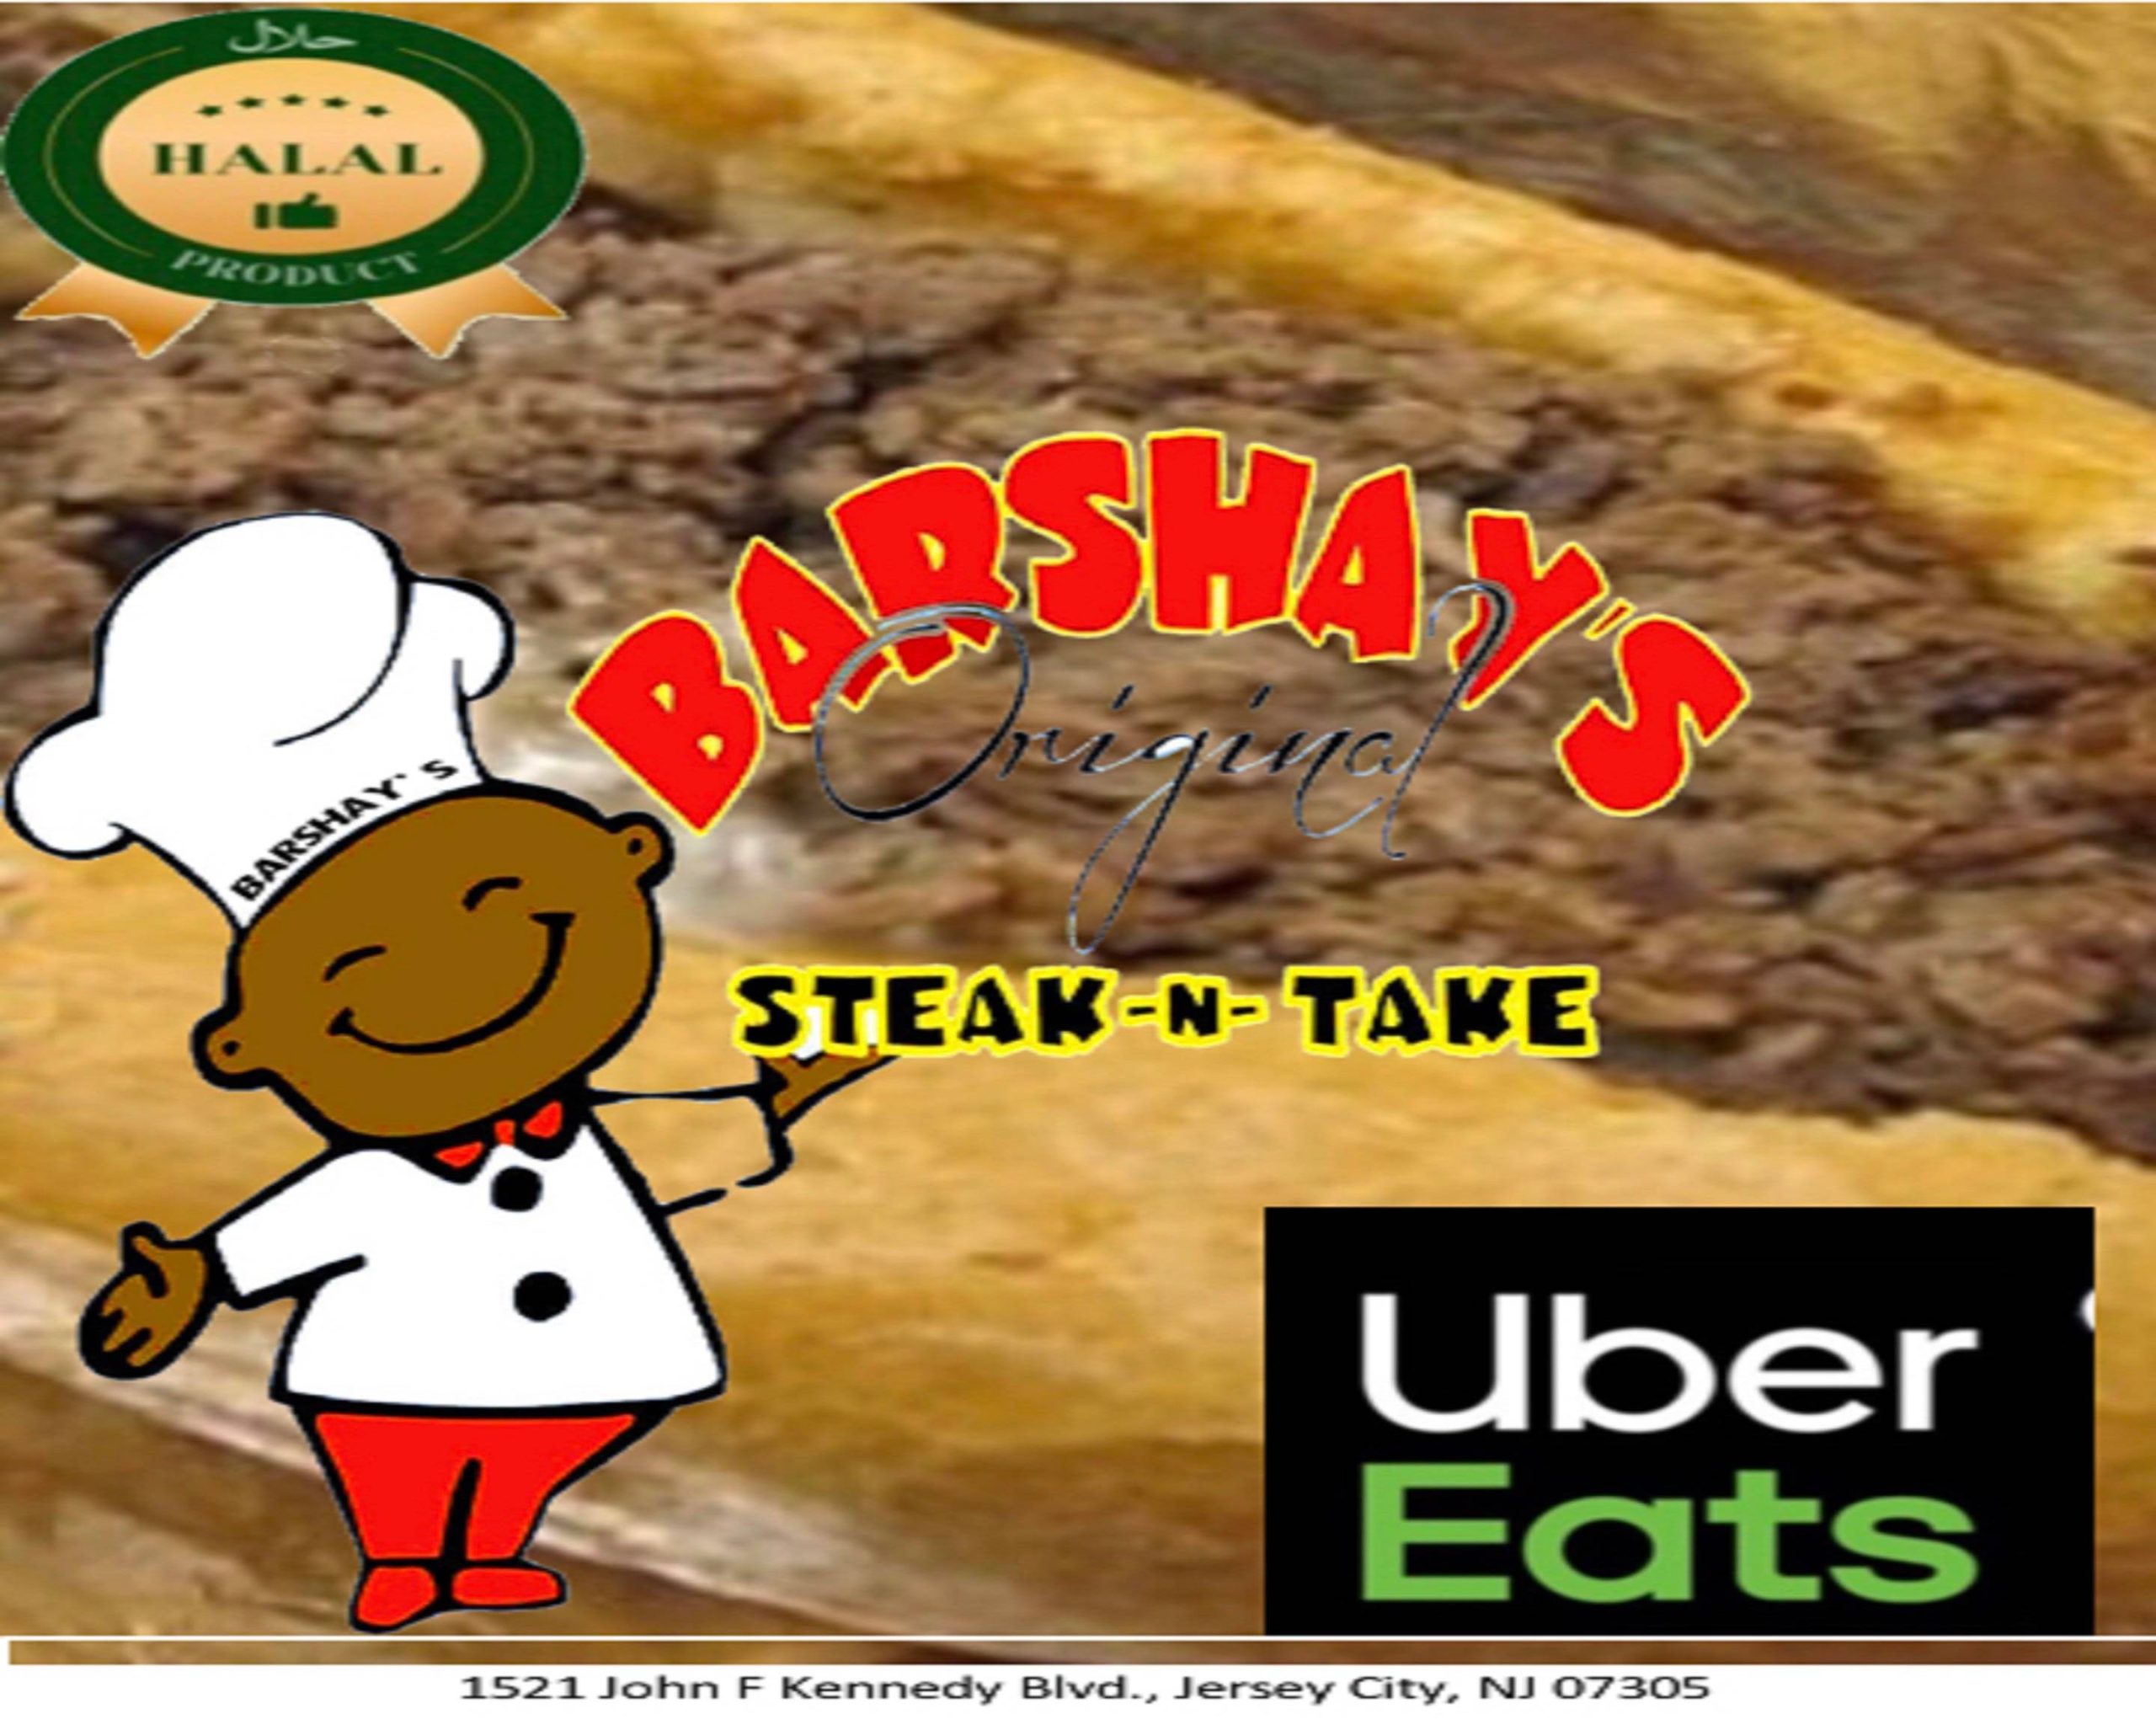 Barshays Original Steak N Take